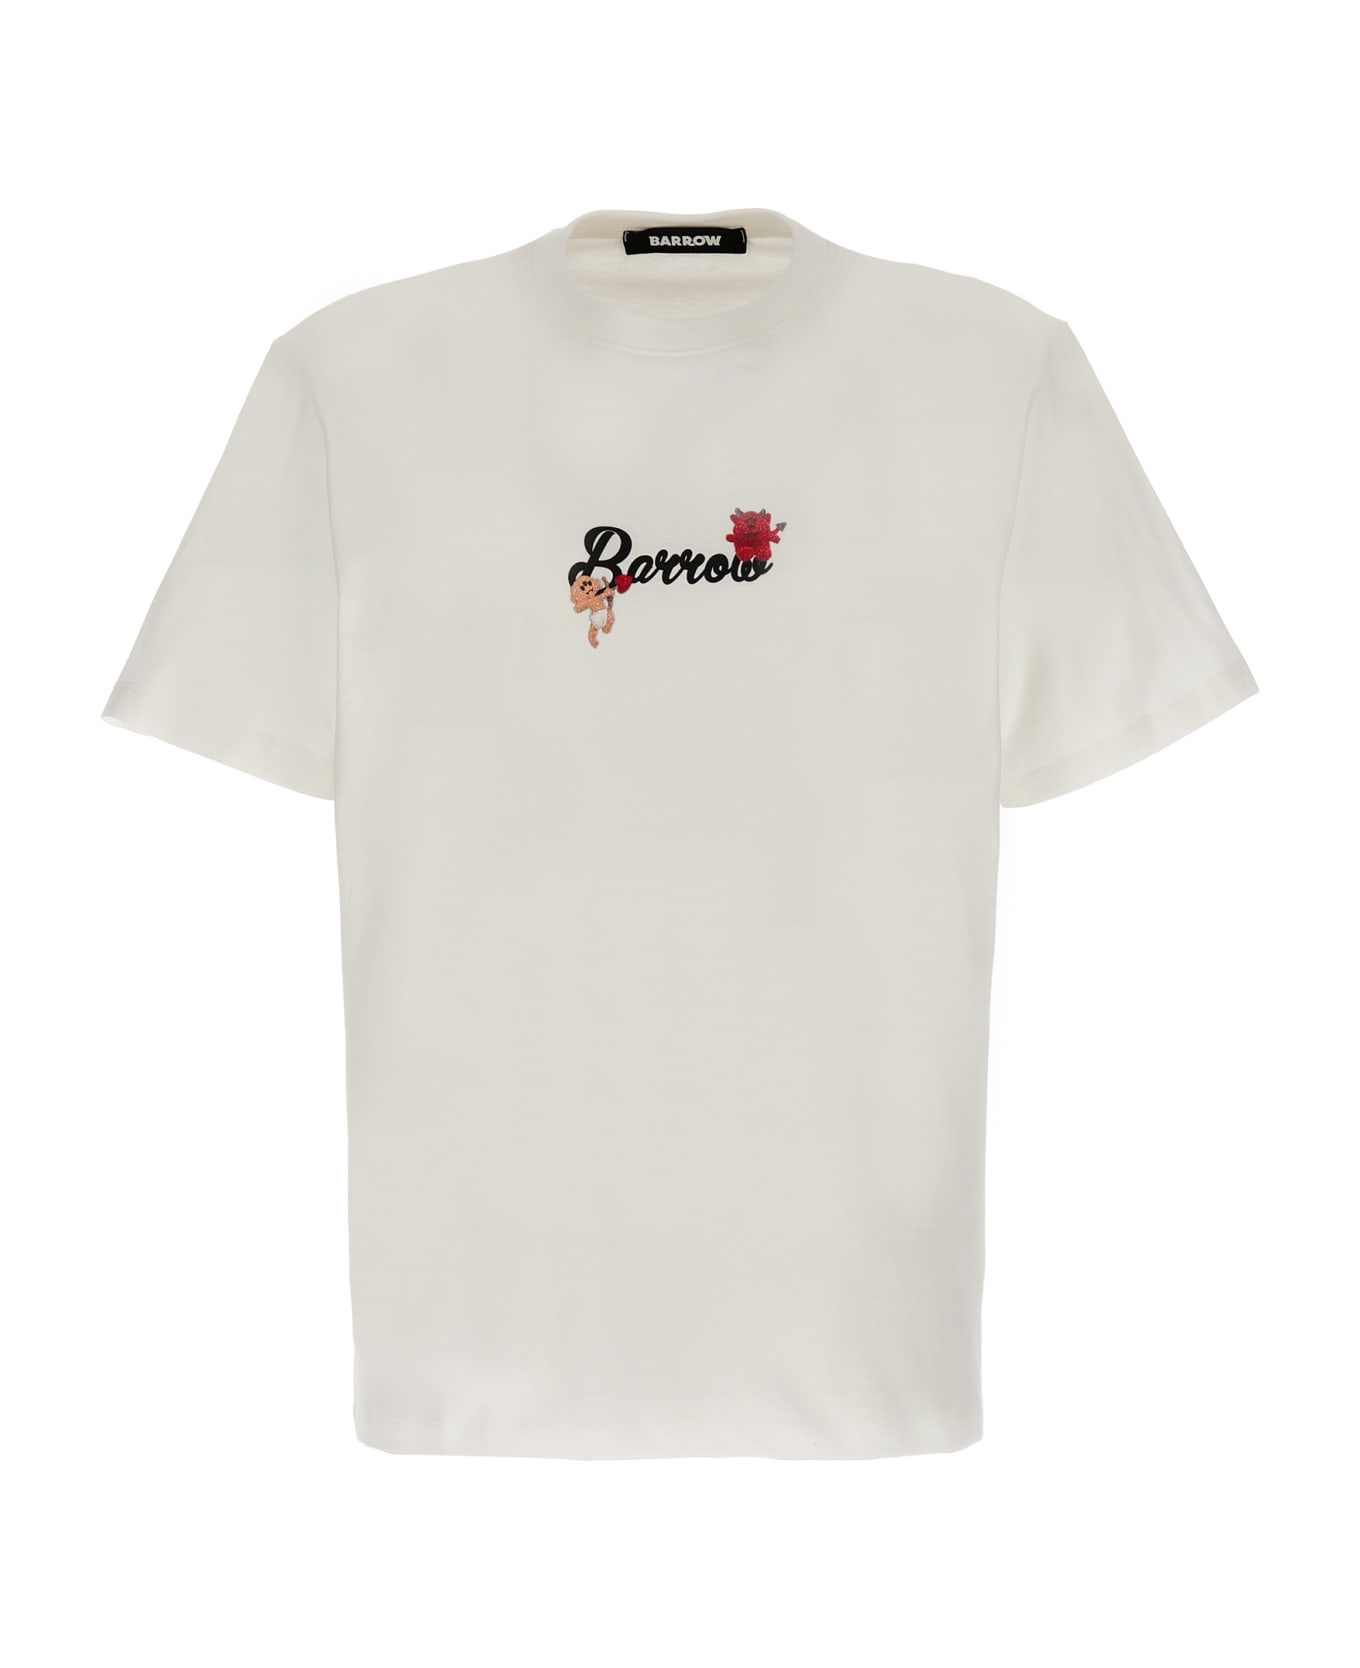 Barrow Printed T-shirt - White シャツ